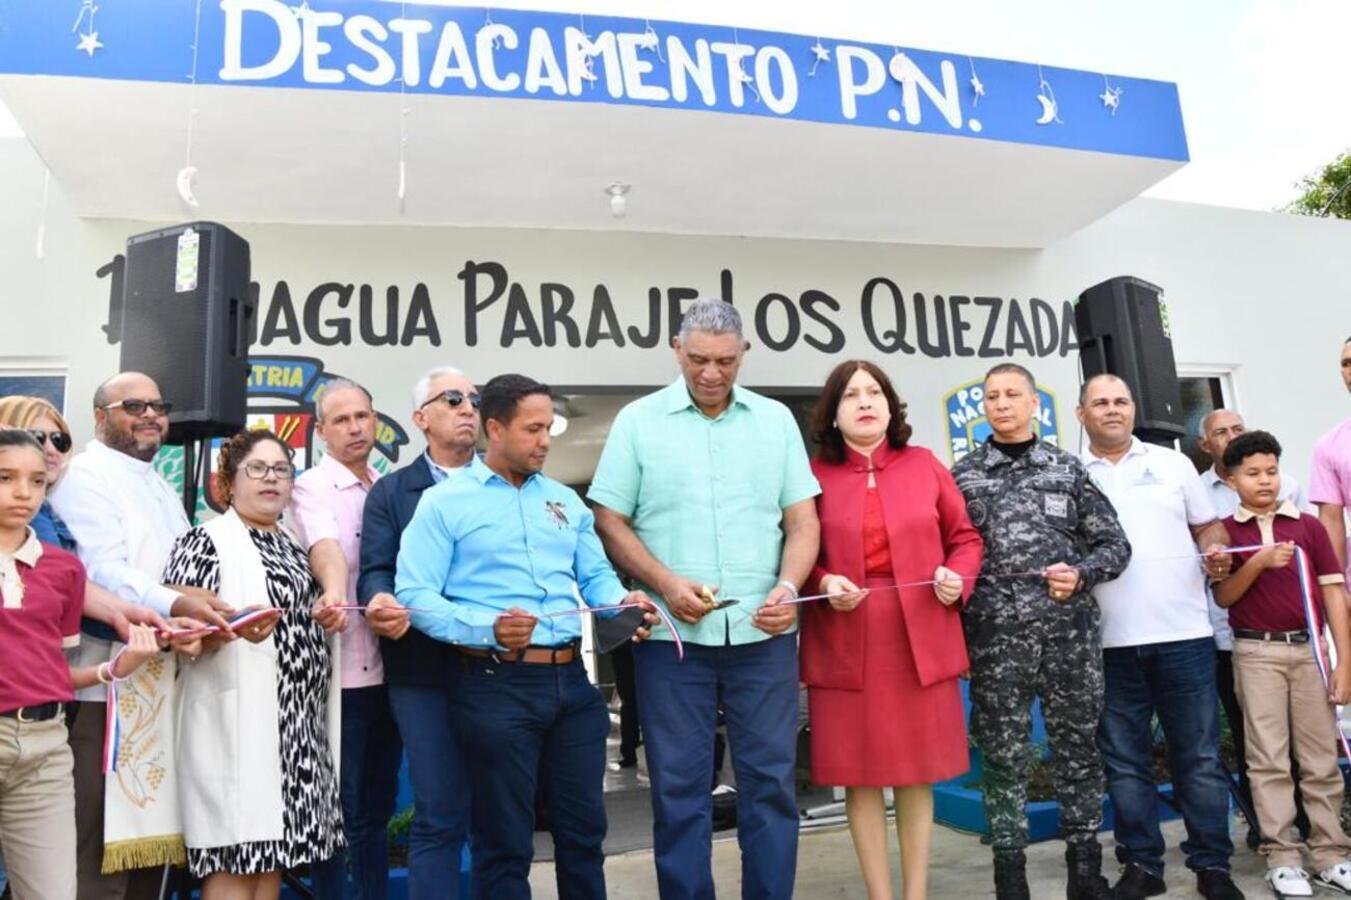 REPÚBLICA DOMINICANA: Interior y Policía abre destacamento en Los Quezada, La Vega; anuncian entrega de apartamentos y aumento salarial